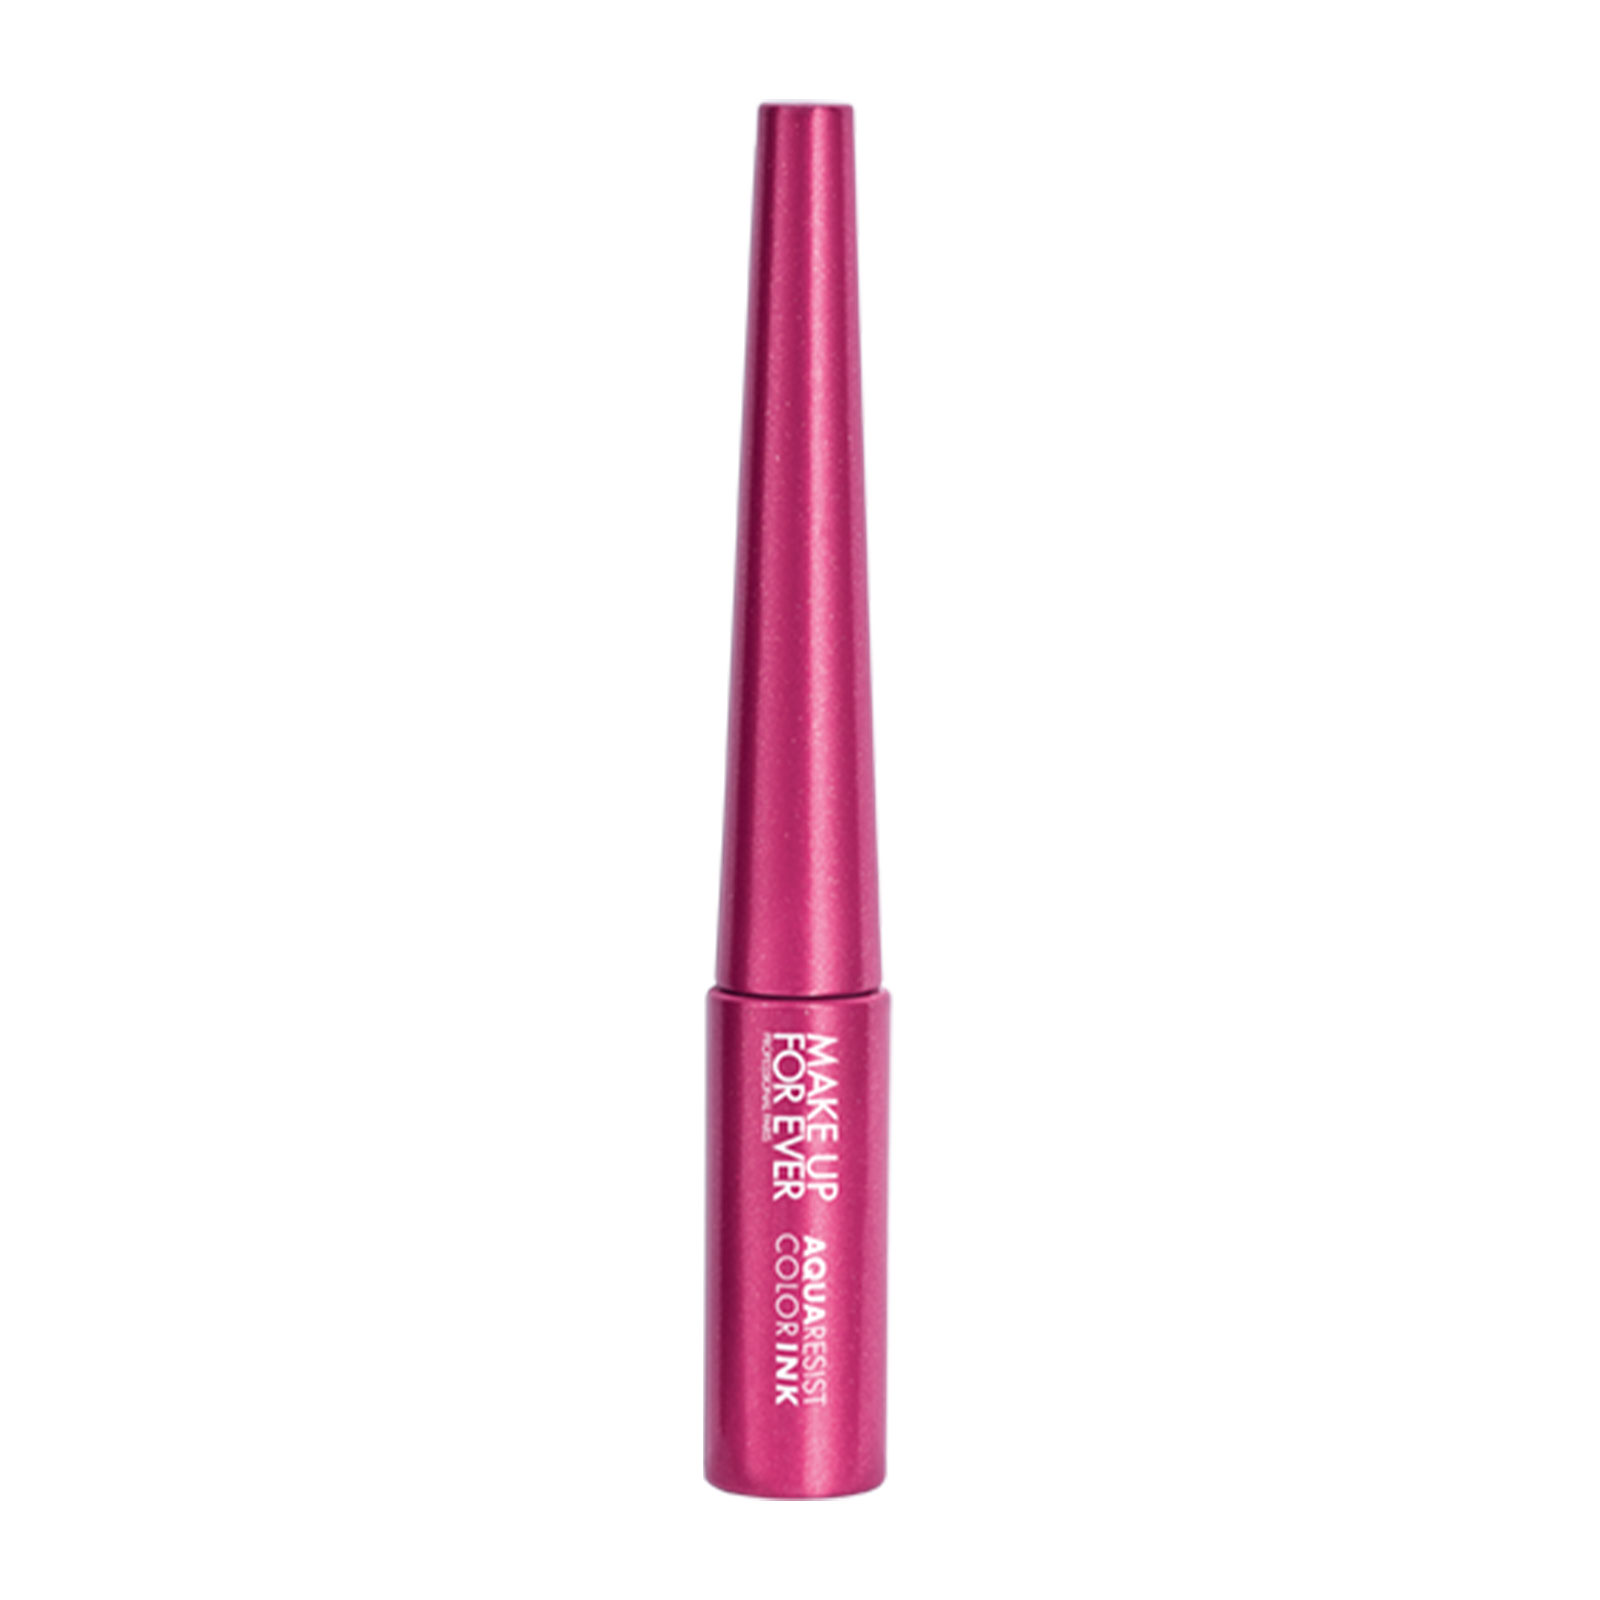 Make Up For Ever Aqua Resist Graphic Ink - Eyeliner 10 Pink